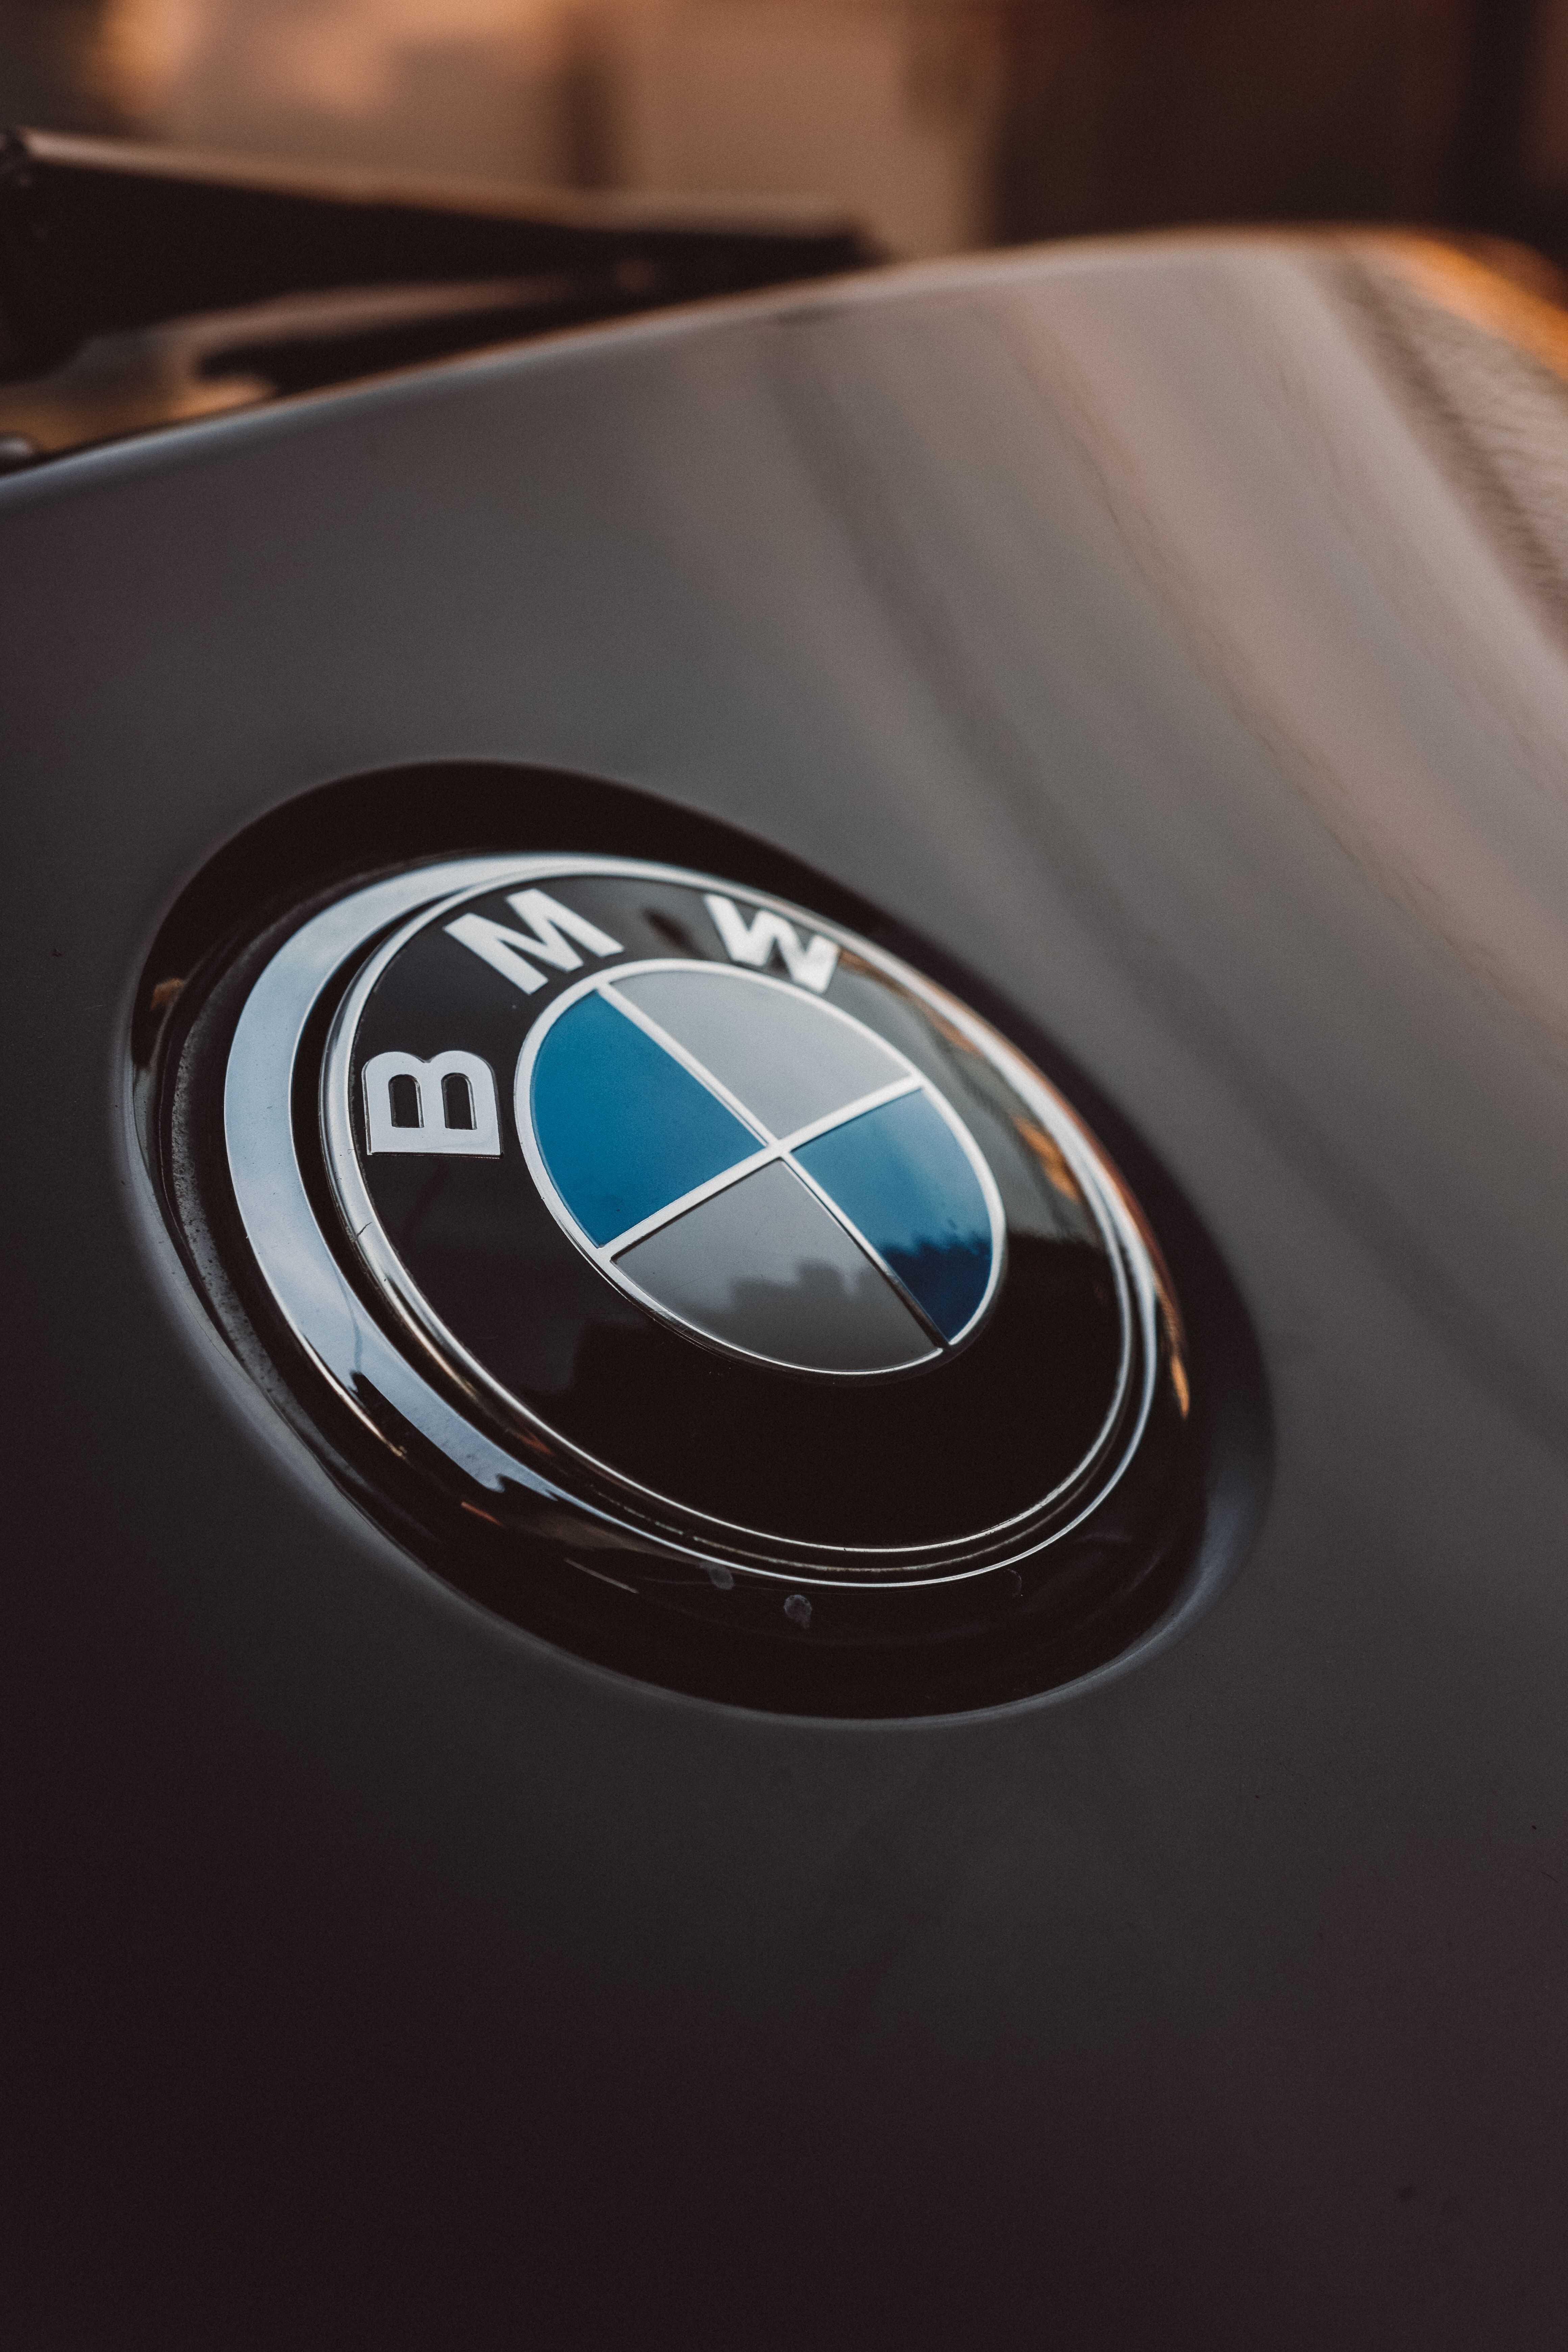  BMW Hintergrundbild 4640x6960. 1.Bmw Bilder Und Fotos · Kostenlos Downloaden · Stock Fotos